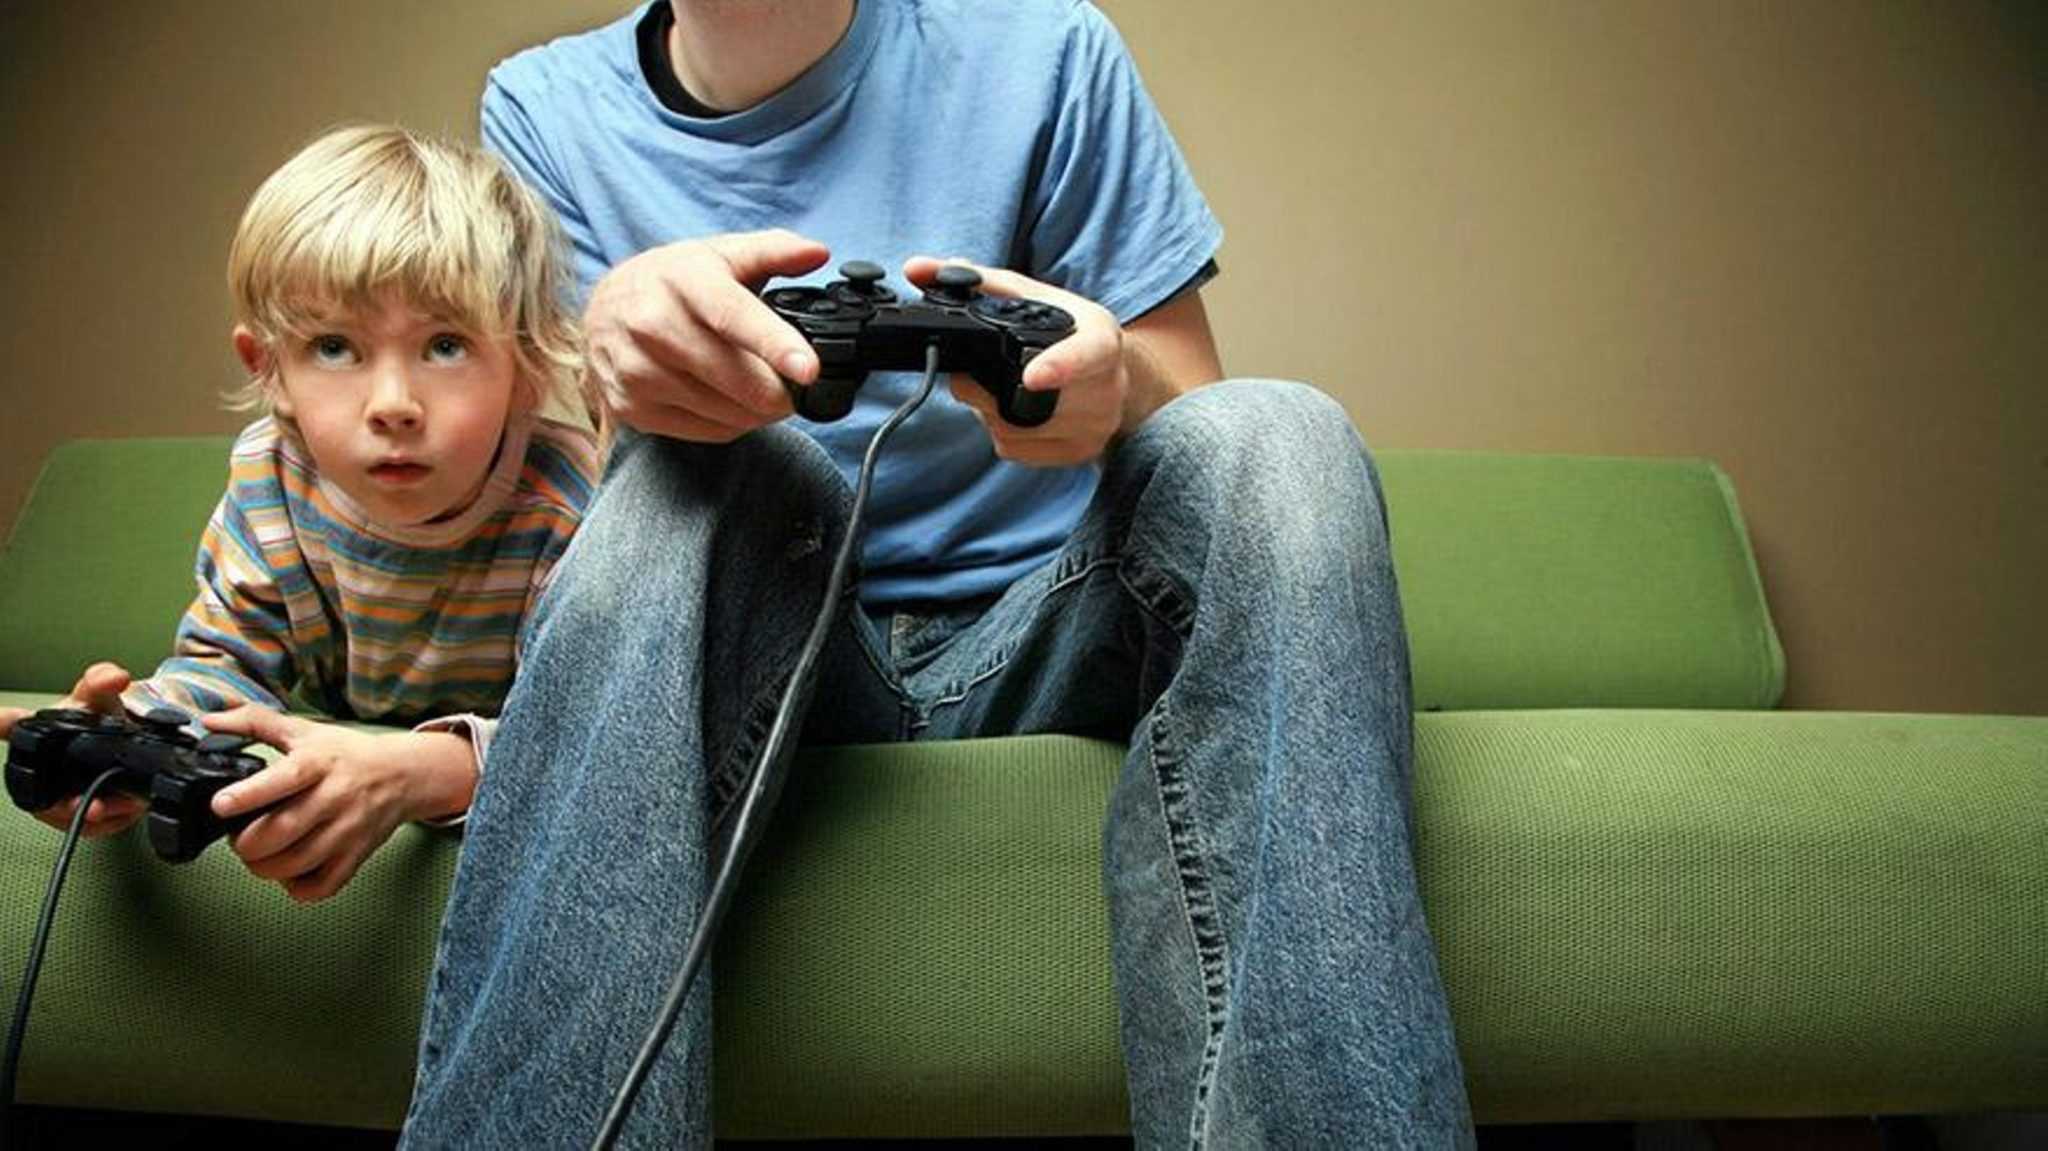 Вред компьютерных игр: стоит ли запрещать играть детям — колесо жизни